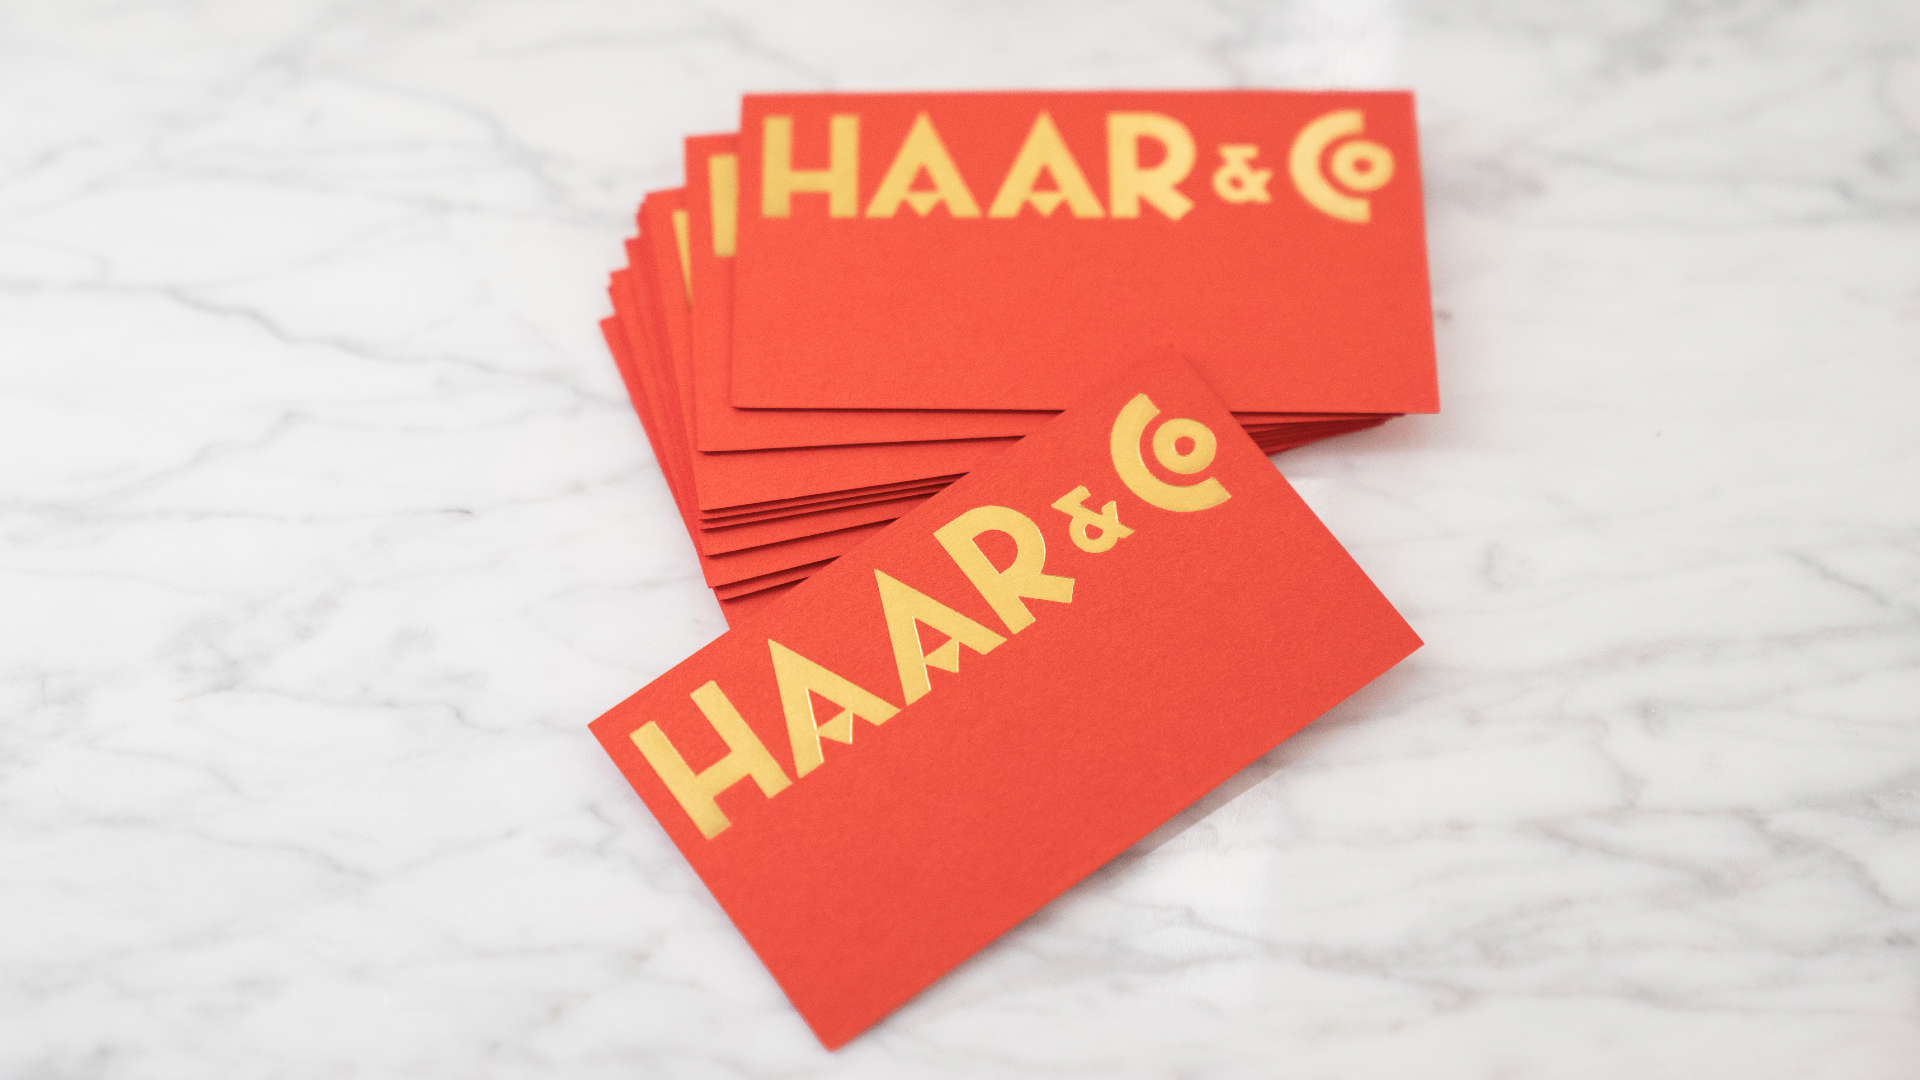 Haar&Co_Branding_MLee.001